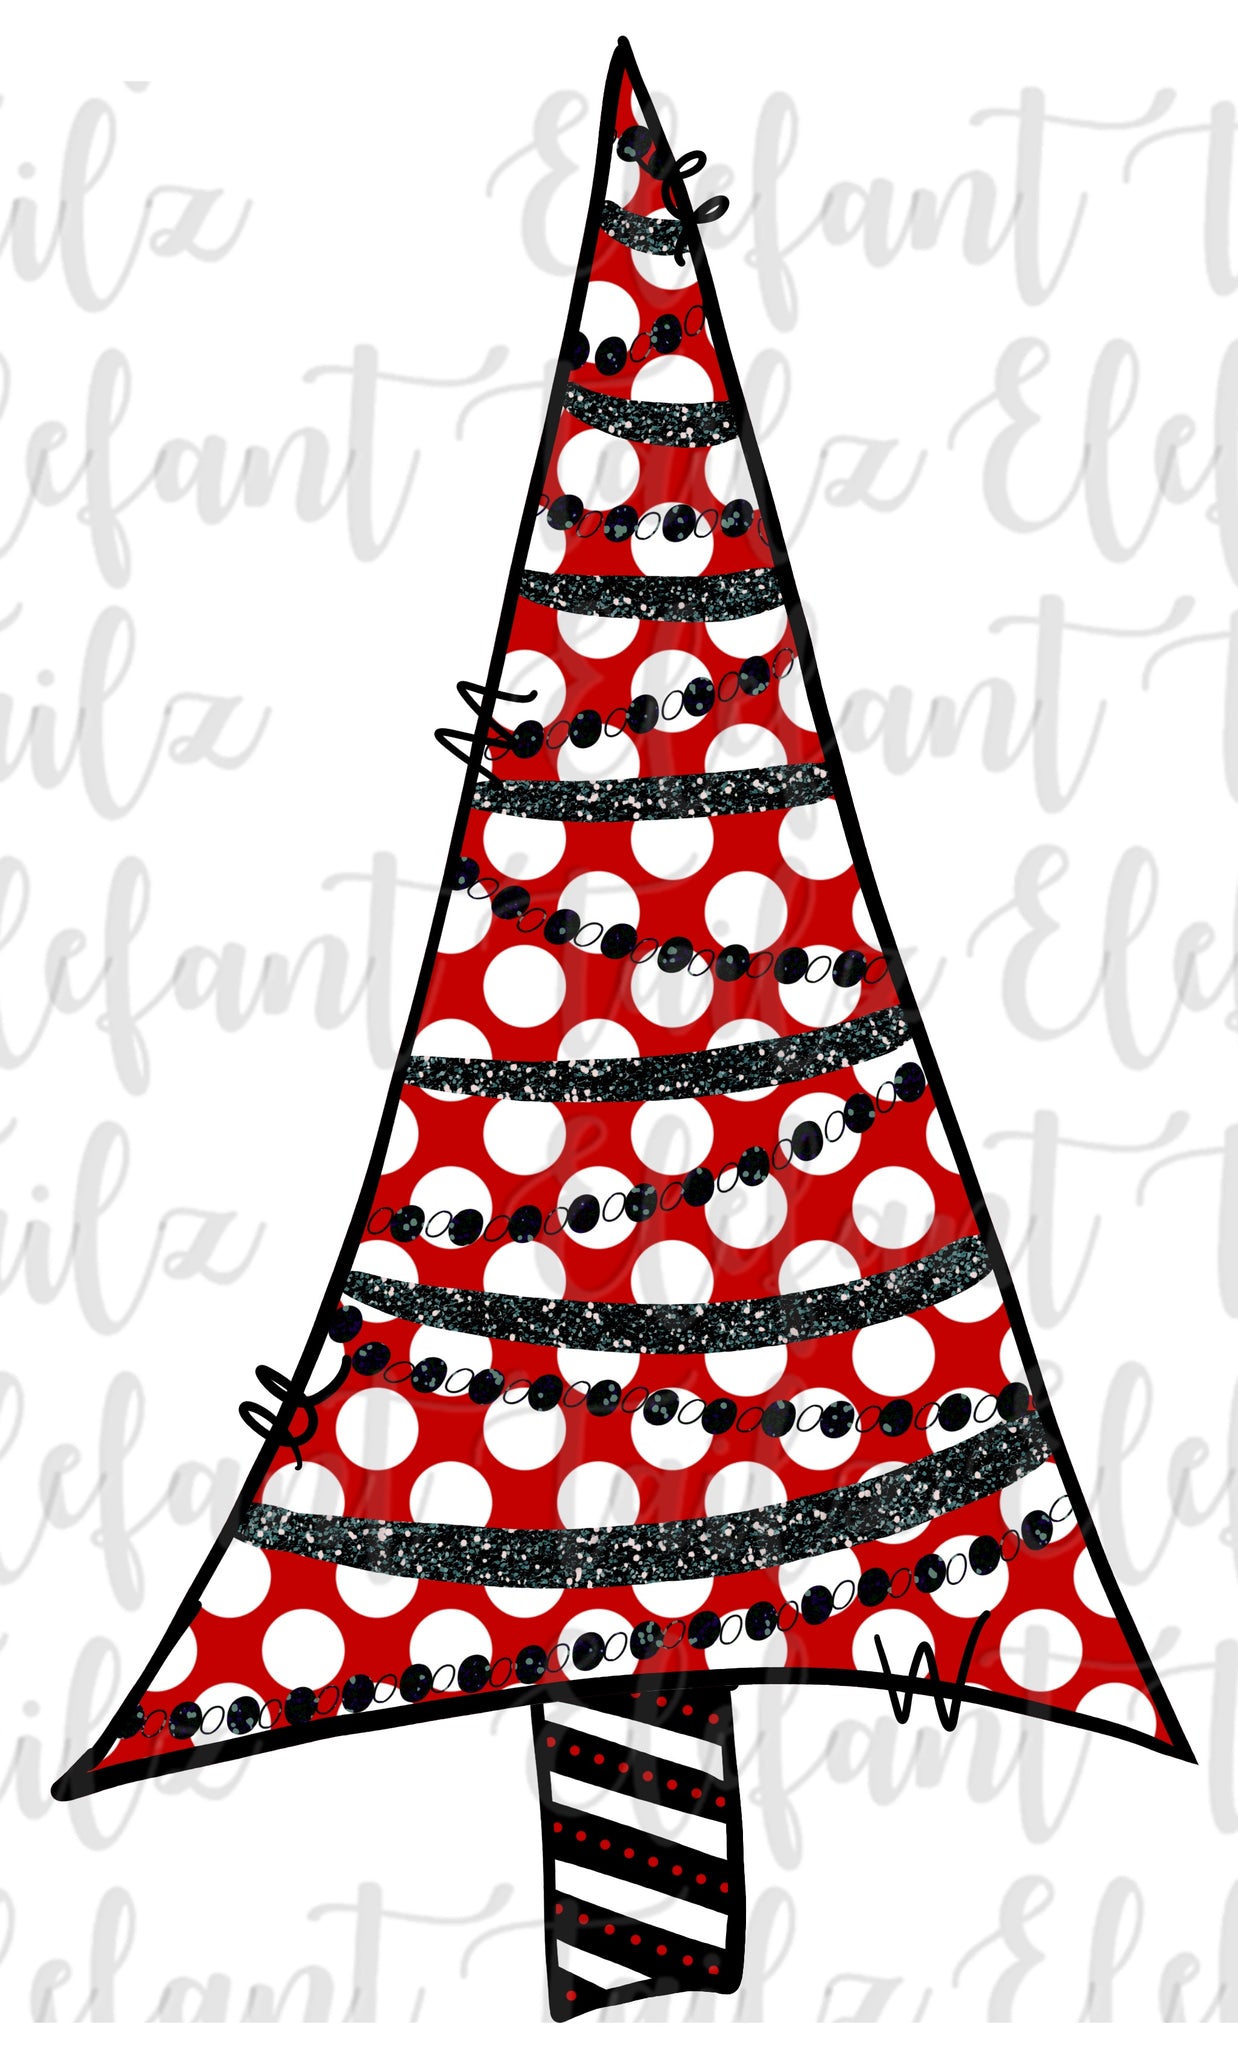 Red Polka Dot Christmas Tree